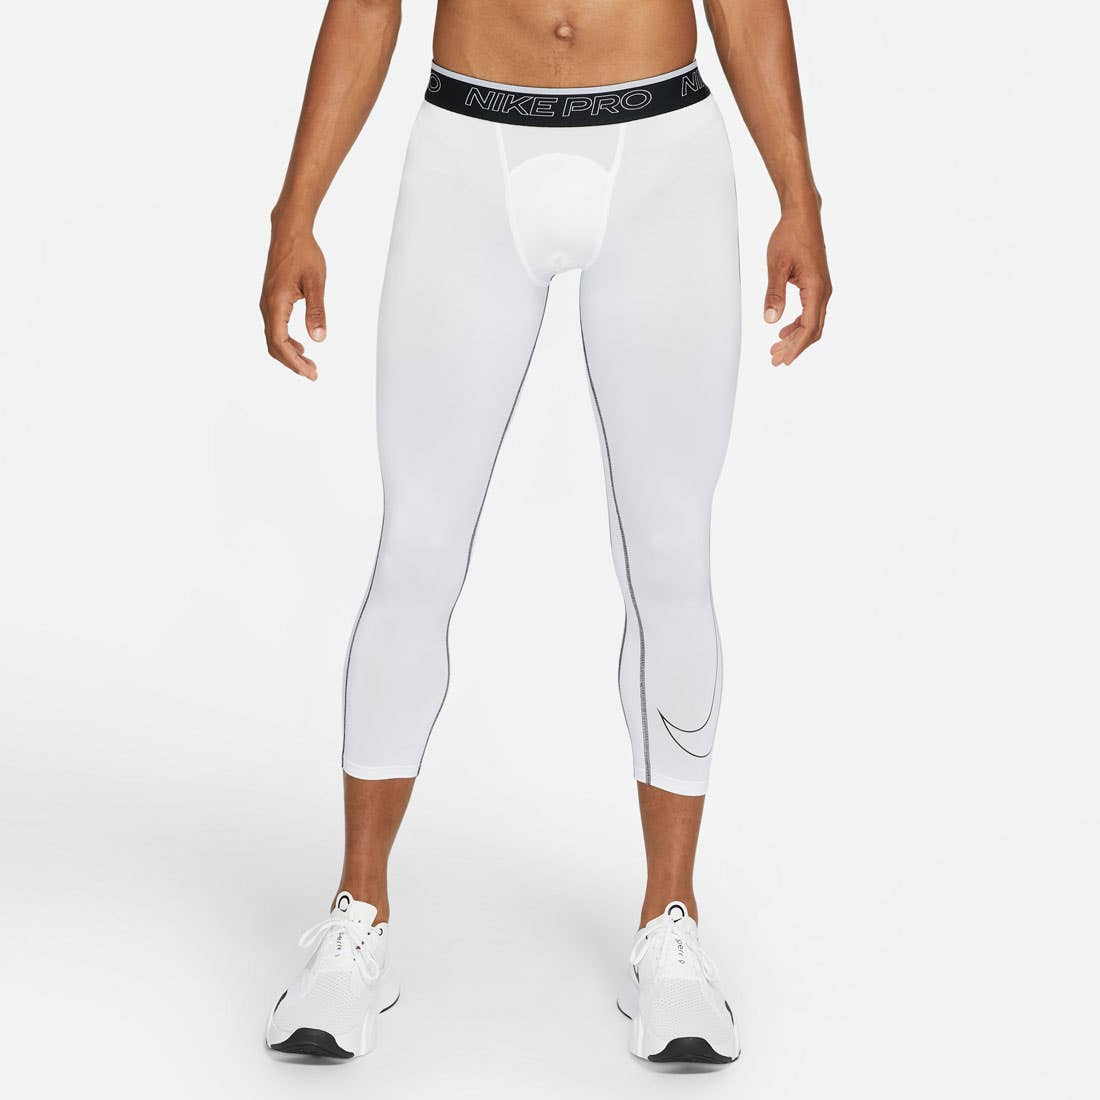 Nike Men's Pro 3/4 Compression Pants - Adult | Lacrosse Unlimited